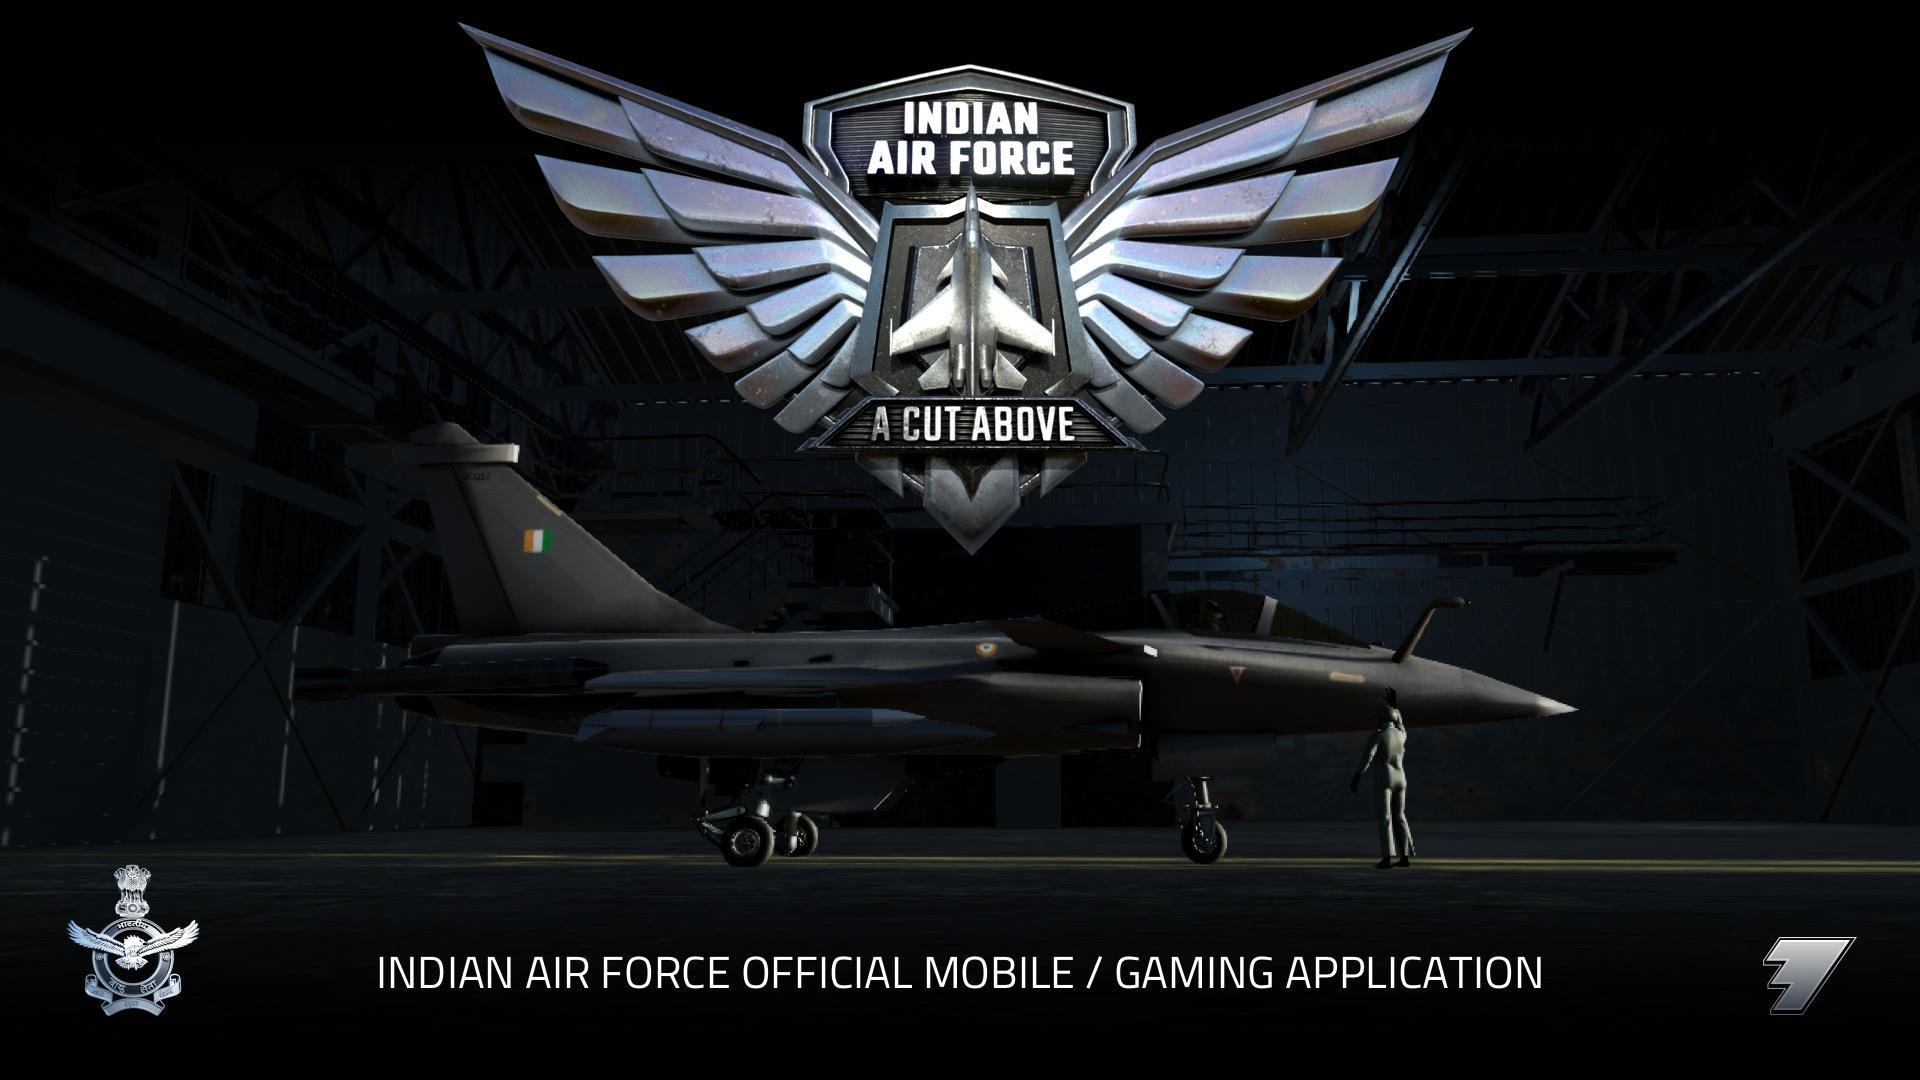 Screenshot 1 of Indische Luftwaffe: Ein Schnitt darüber 1.5.4